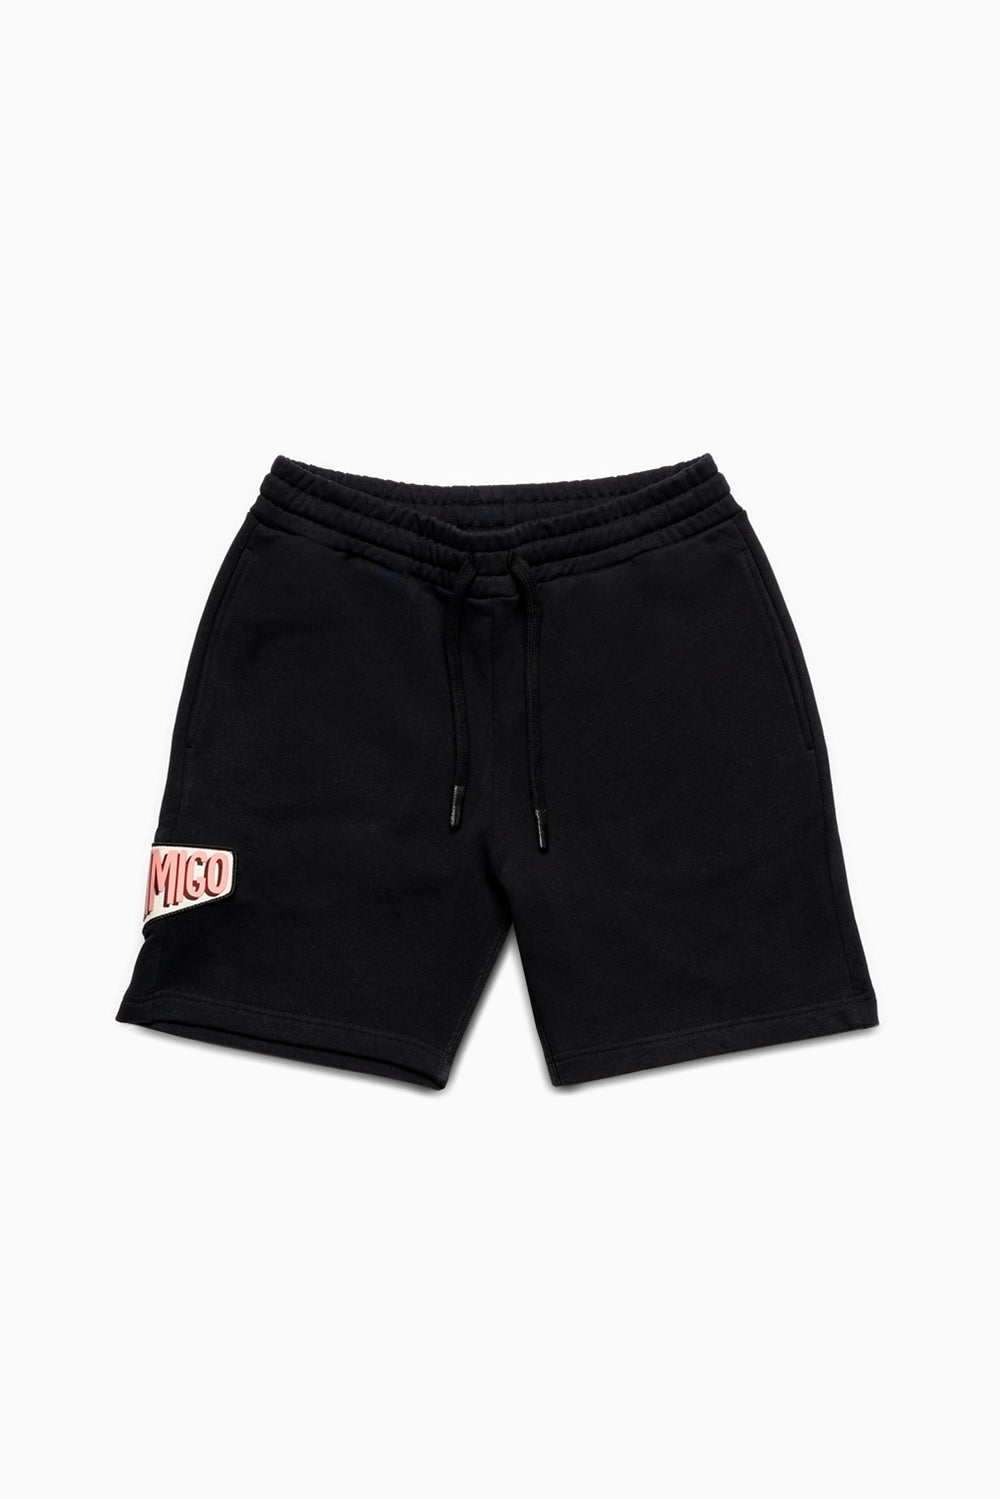 INIMIGO Patch Oversized Shorts